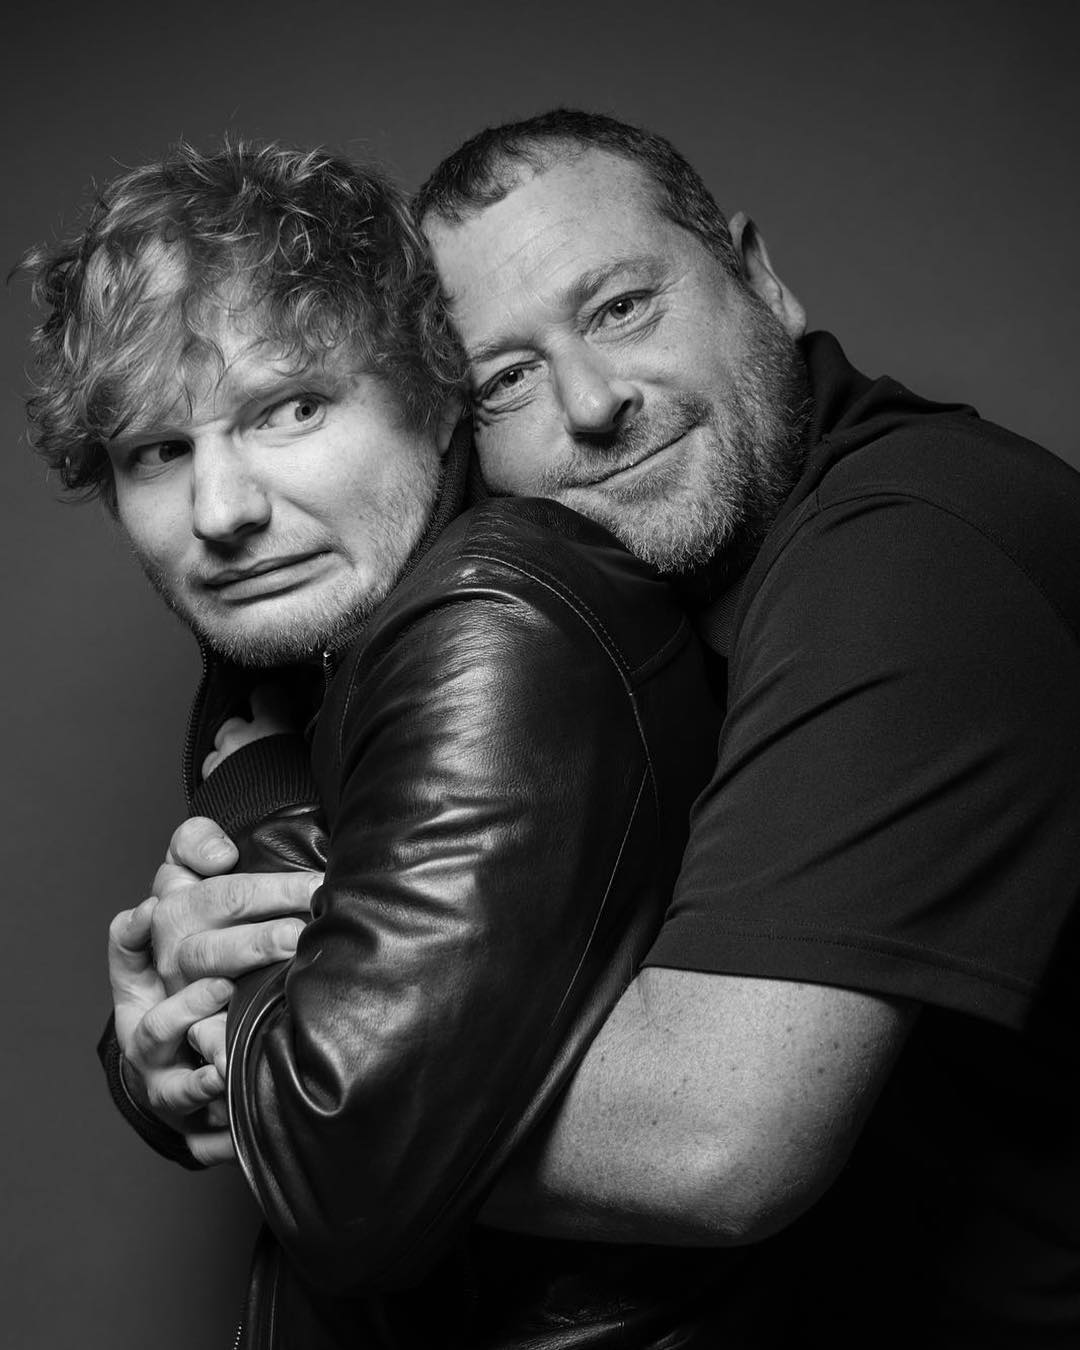 LOL! Bodyguardul lui Ed Sheeran a devenit vedetă pe internet. Uite ce imagini postează pe Instagram!